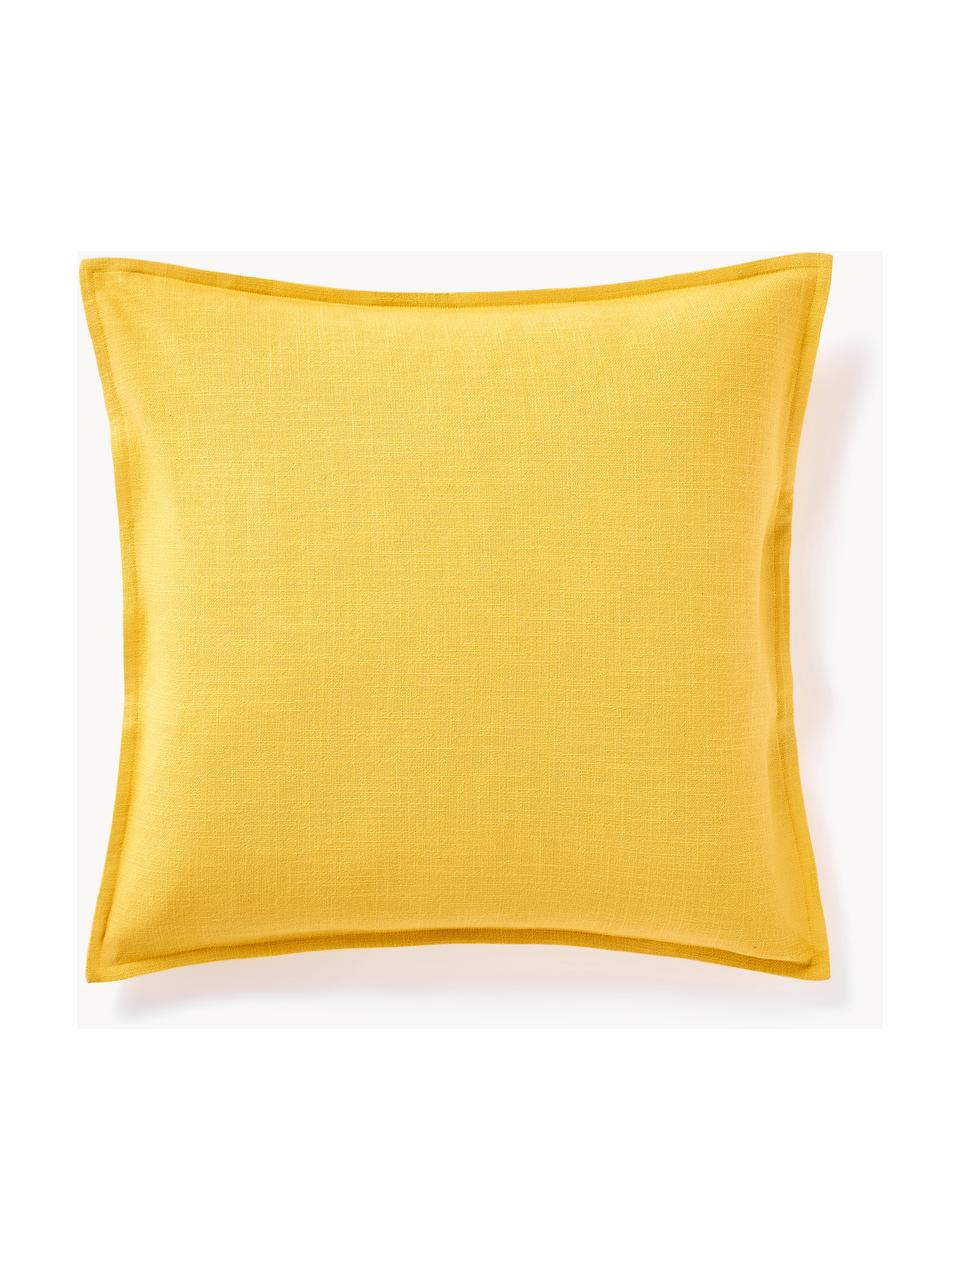 Poszewka na poduszkę z bawełny Vicky, 100% bawełna, Słoneczny żółty, S 50 x D 50 cm